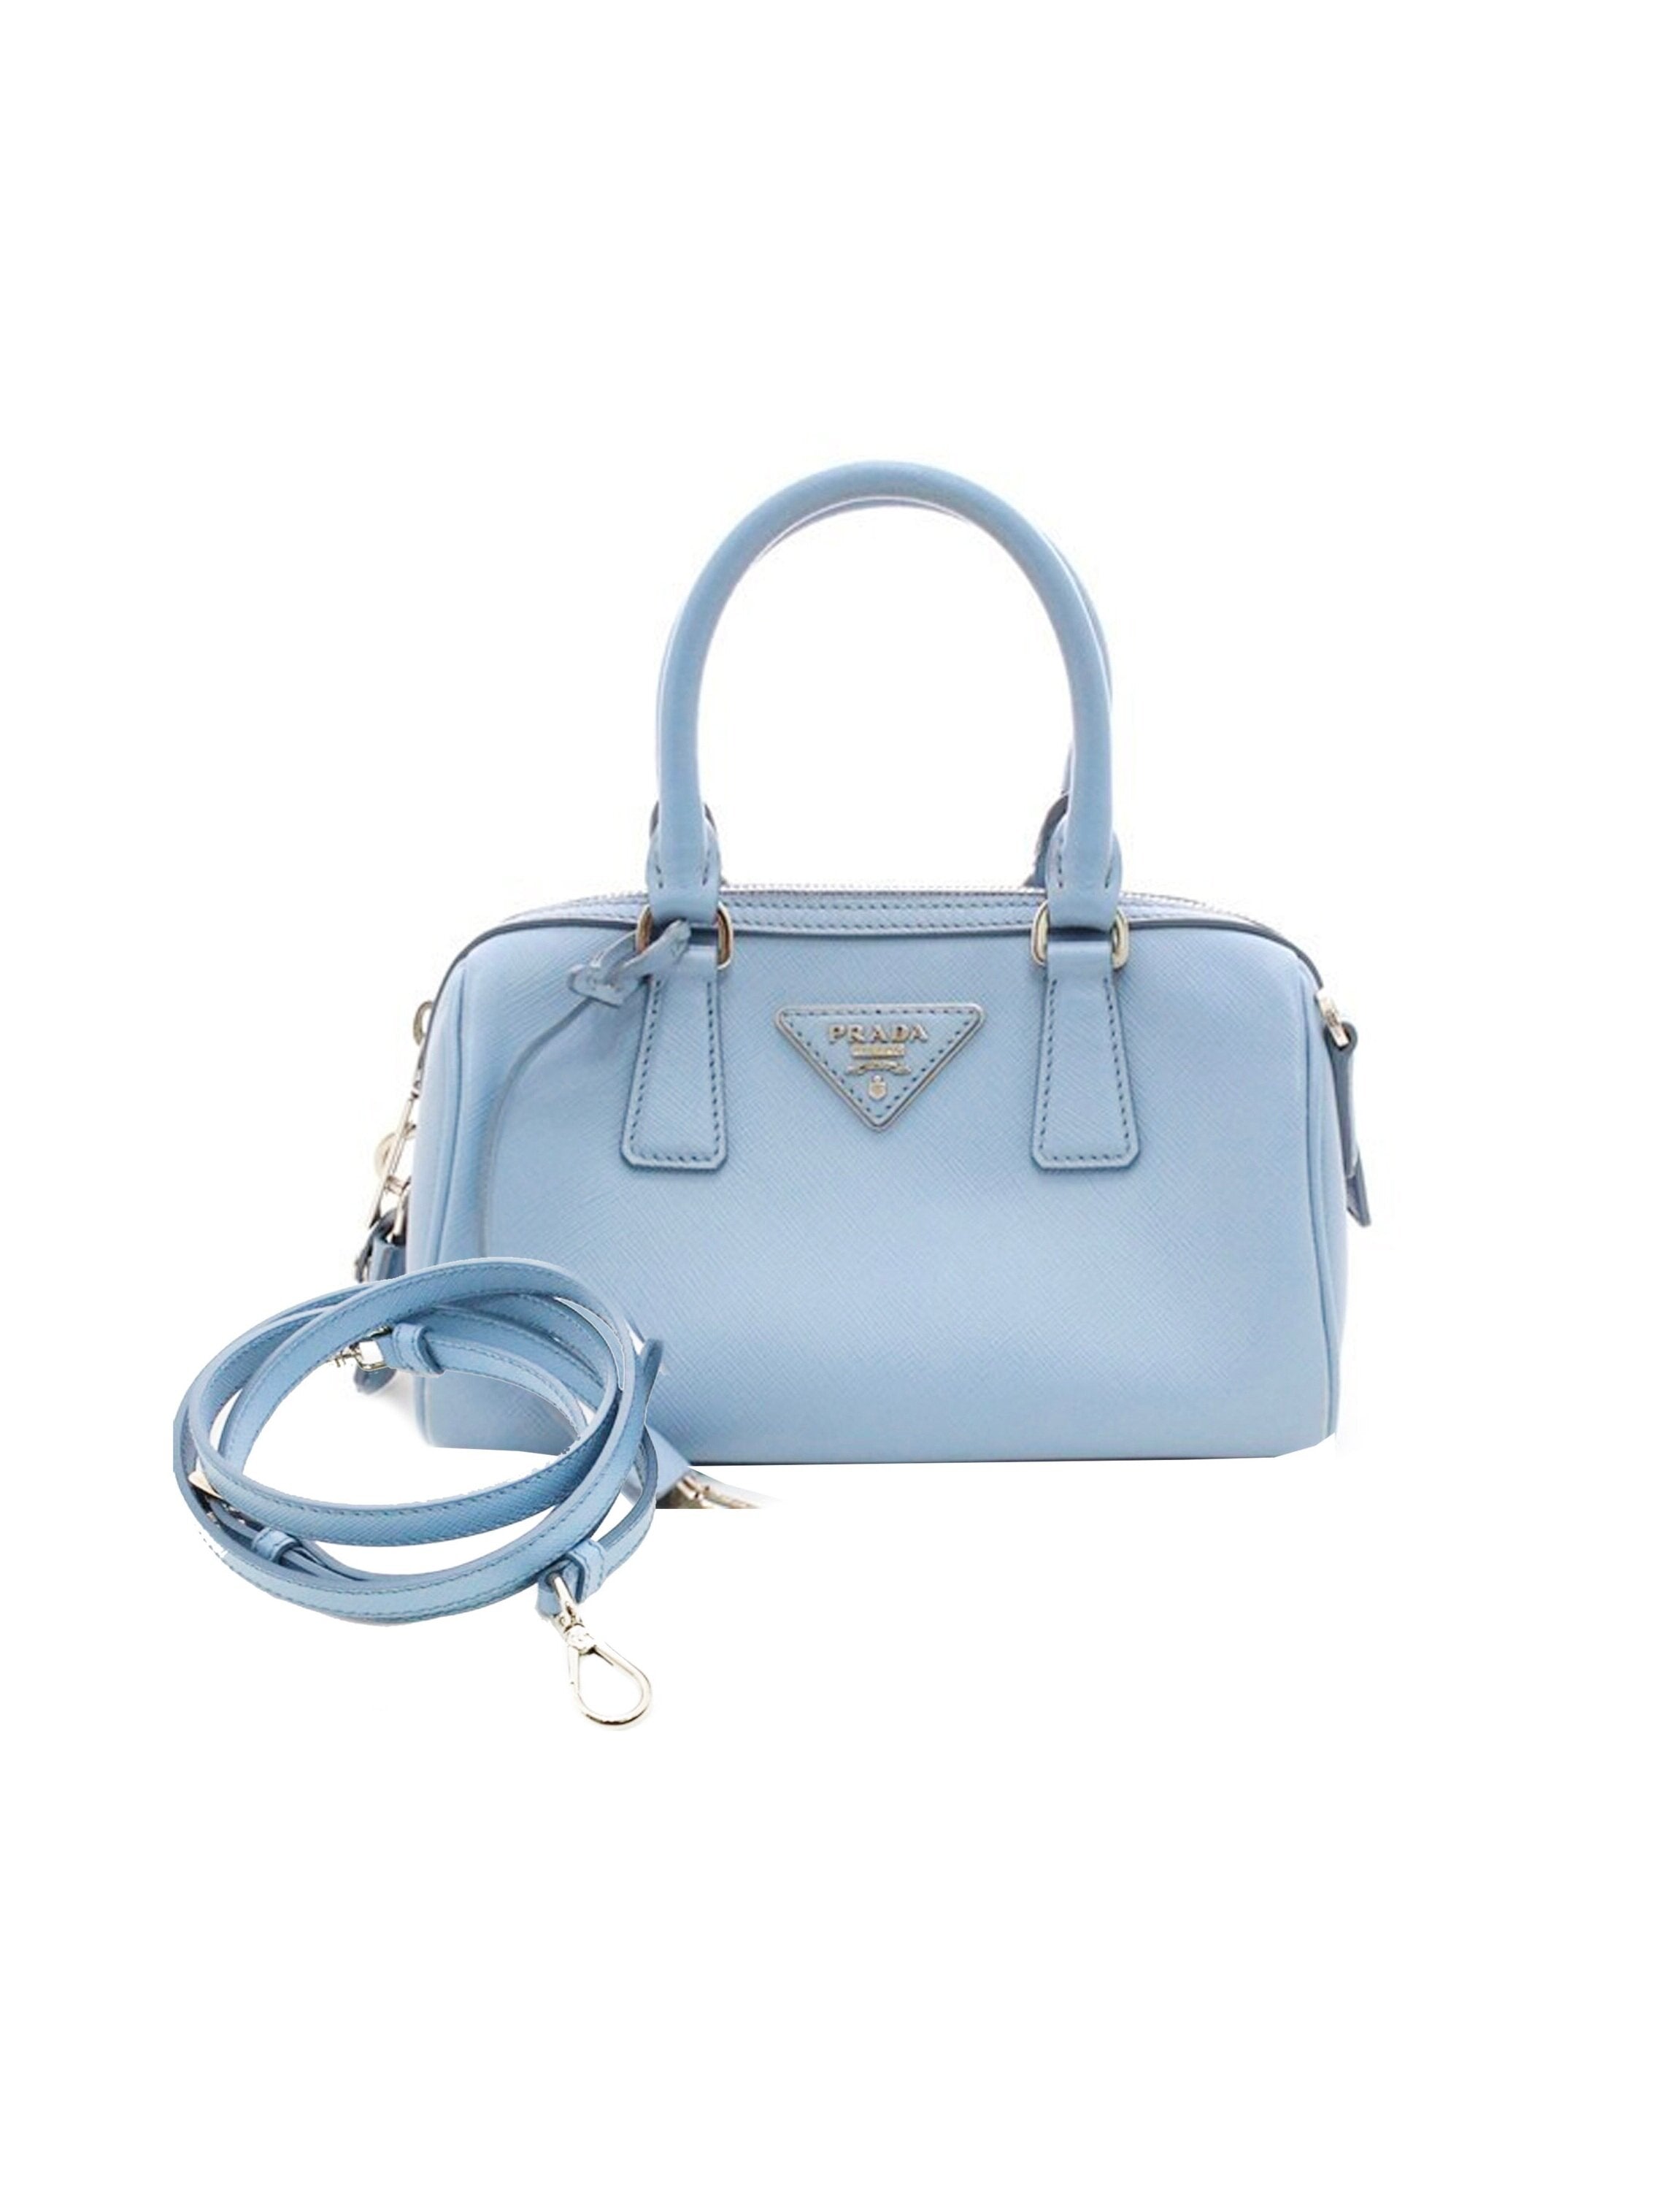 Prada 2010s Small Rare Saffiano Leather Baby Blue Bag